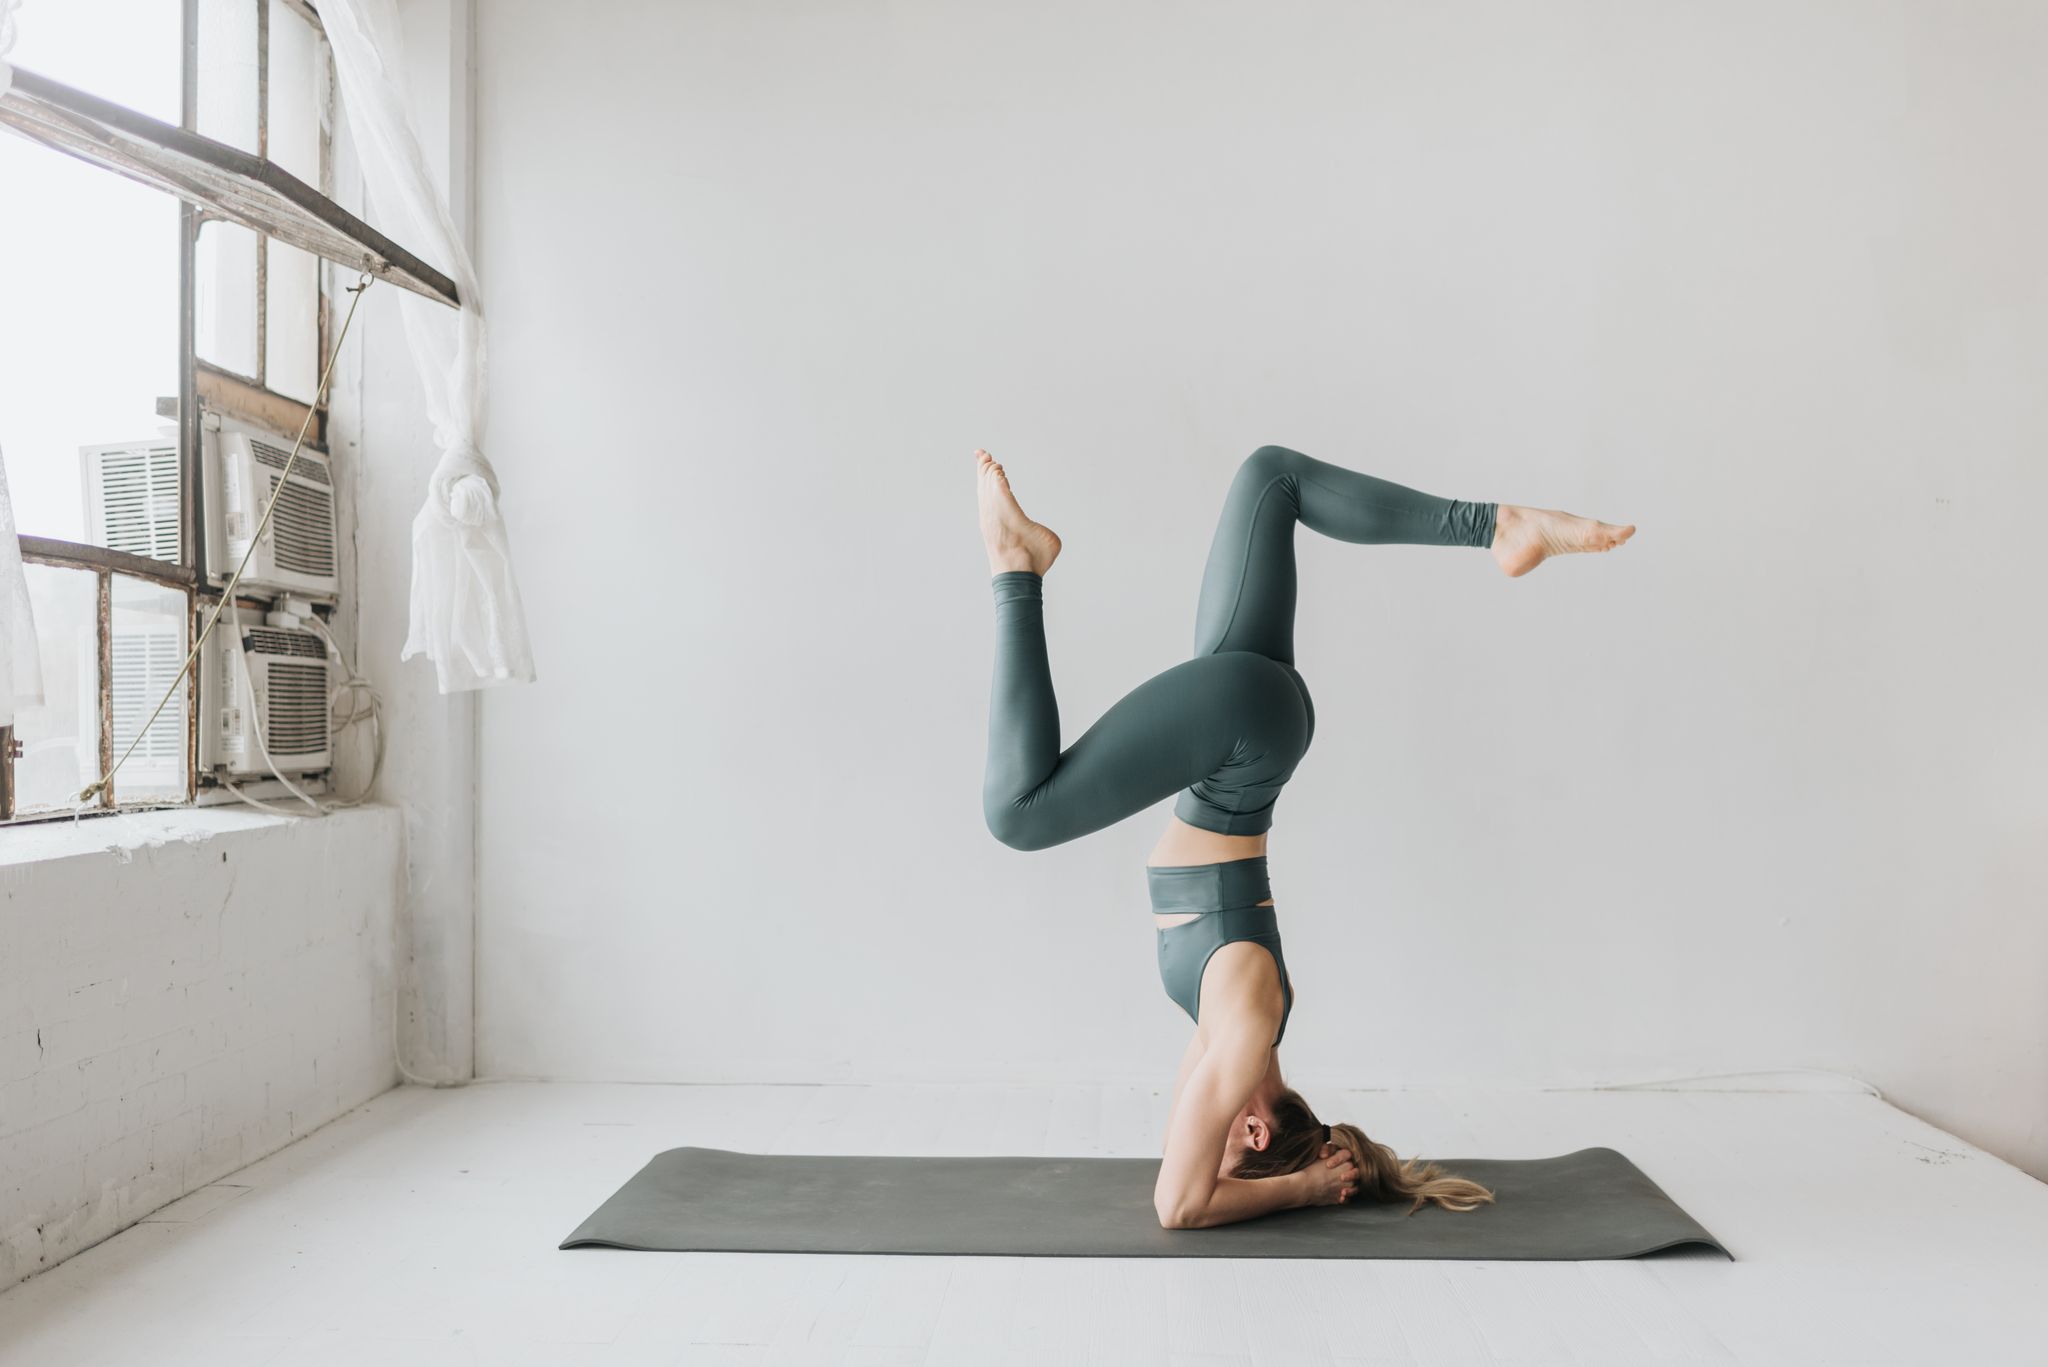 Tipos de yoga tendencia en 2020 - Cómo elegir tu tipo de yoga